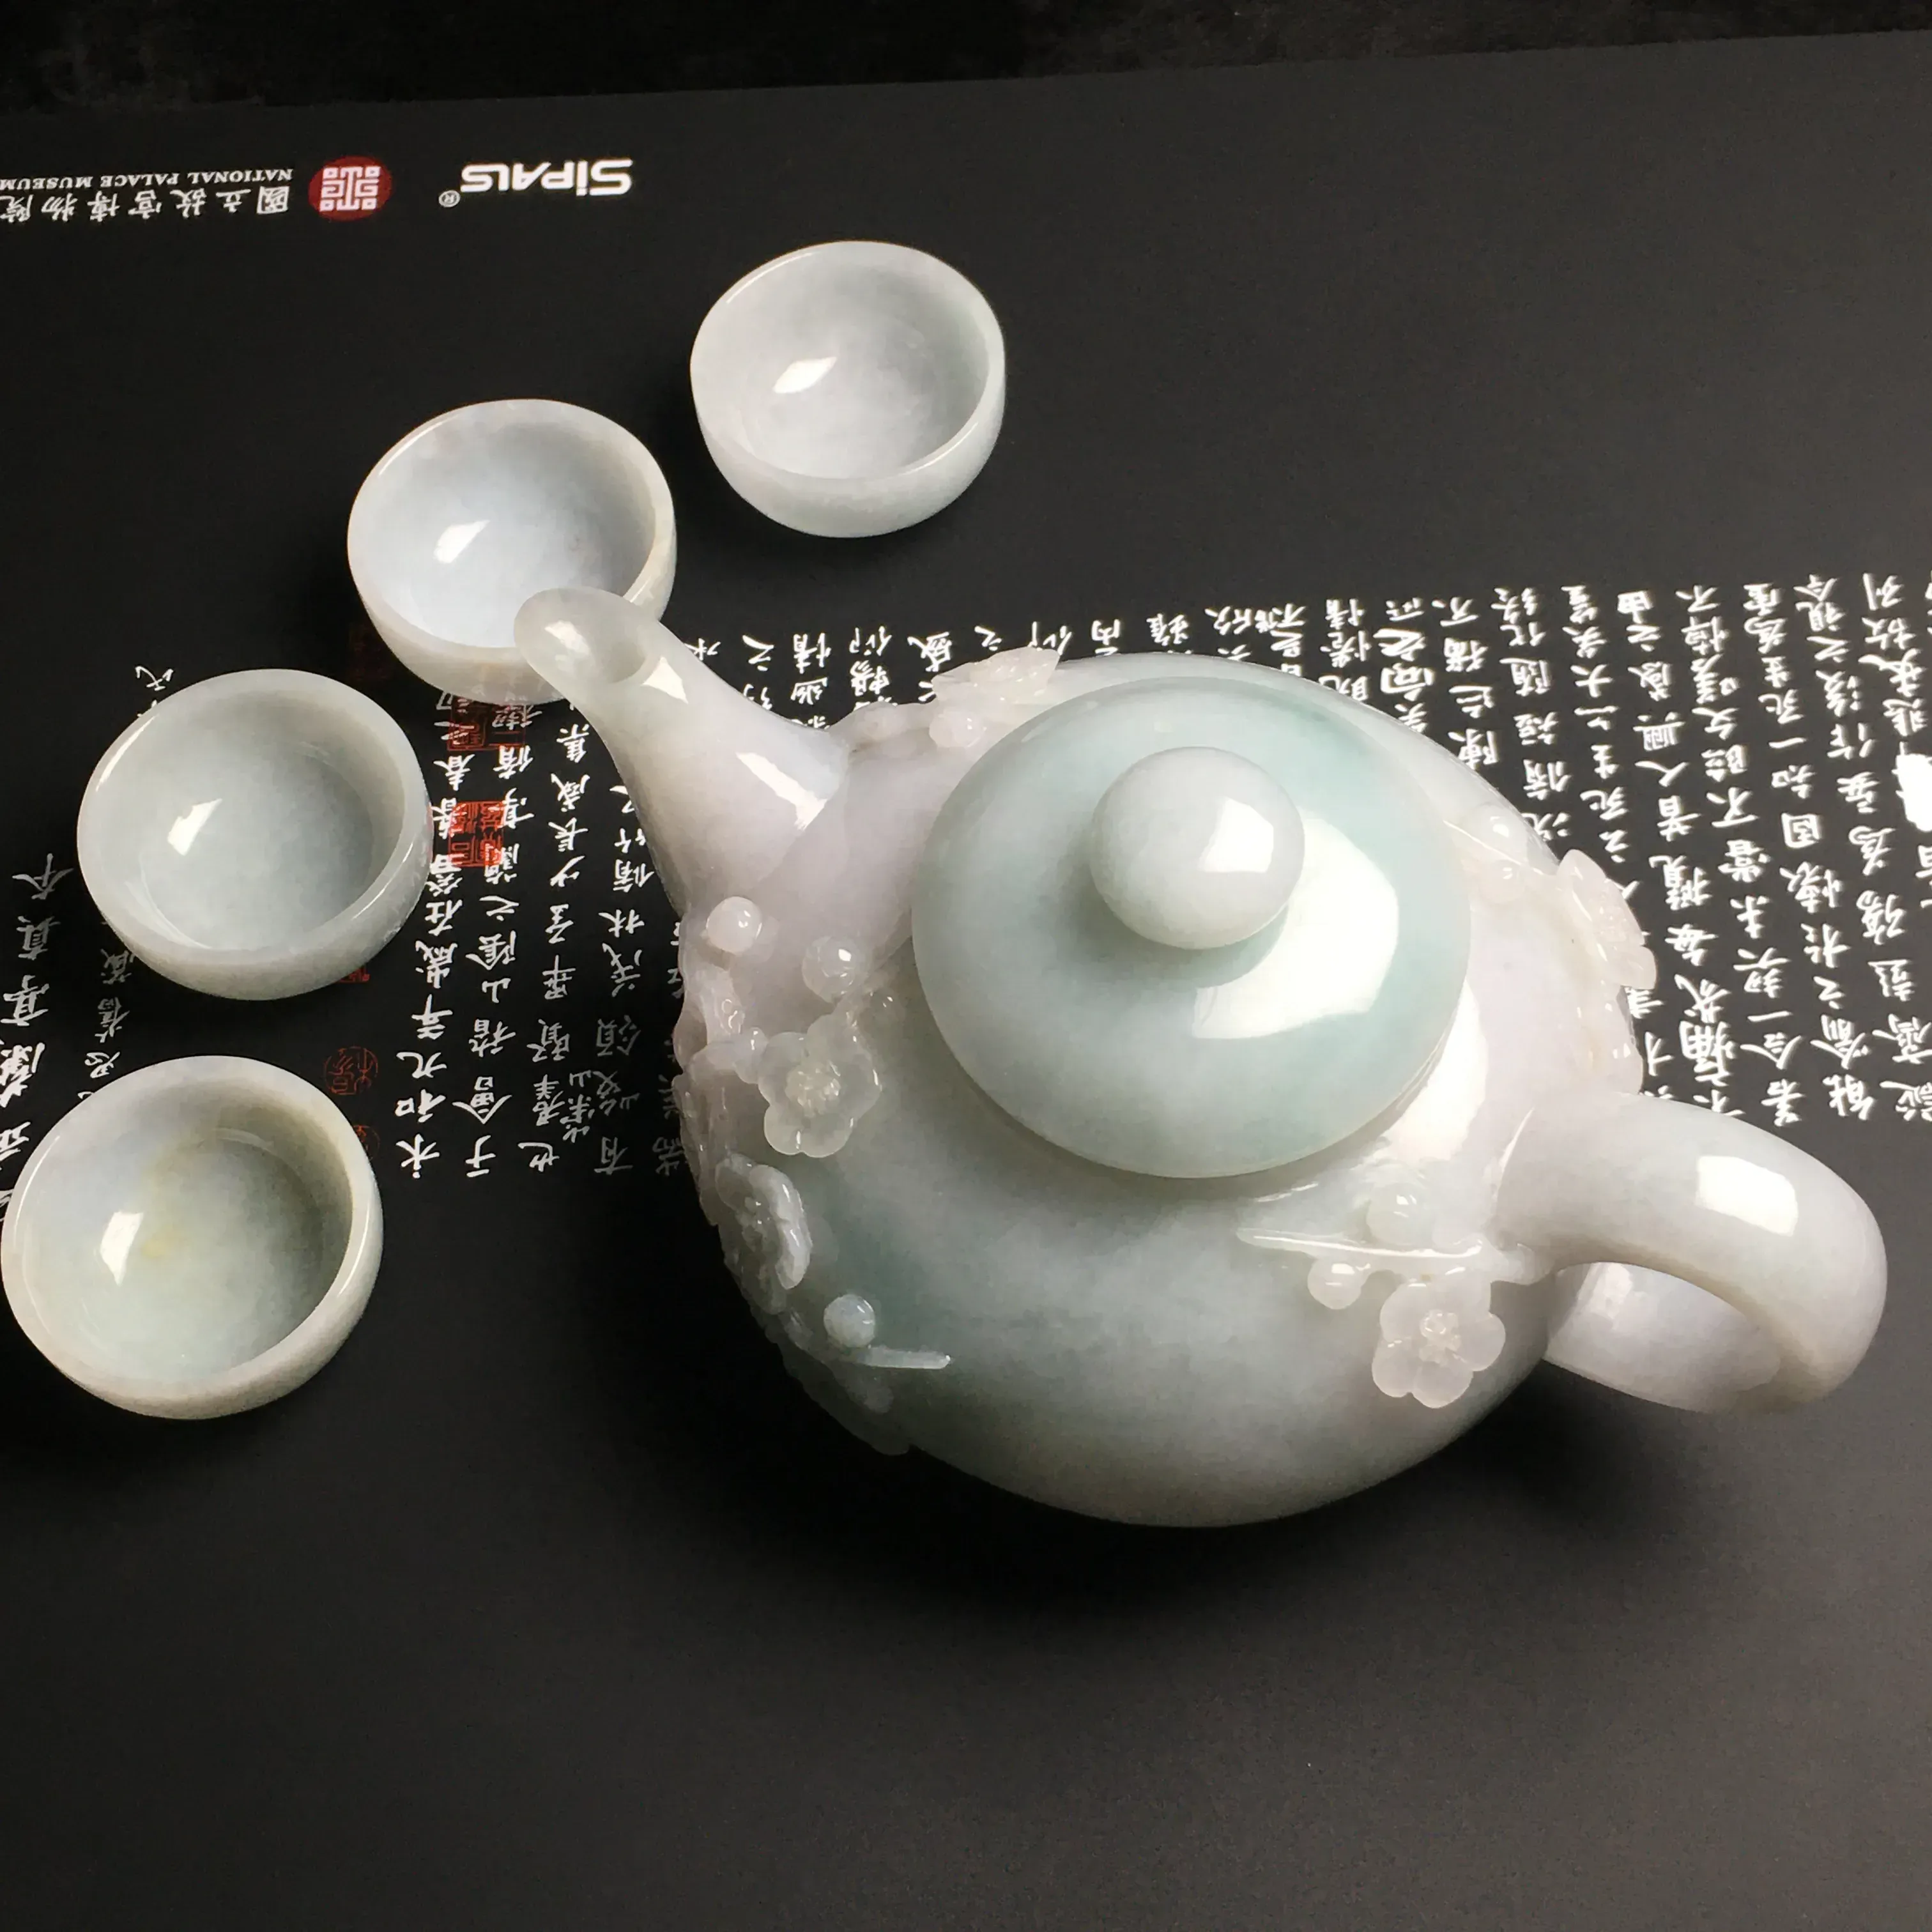 糯化种【梅花】茶具一套 质地细腻 雕工精湛 款式时尚 茶杯尺寸42-21毫米 梅花香自苦寒来